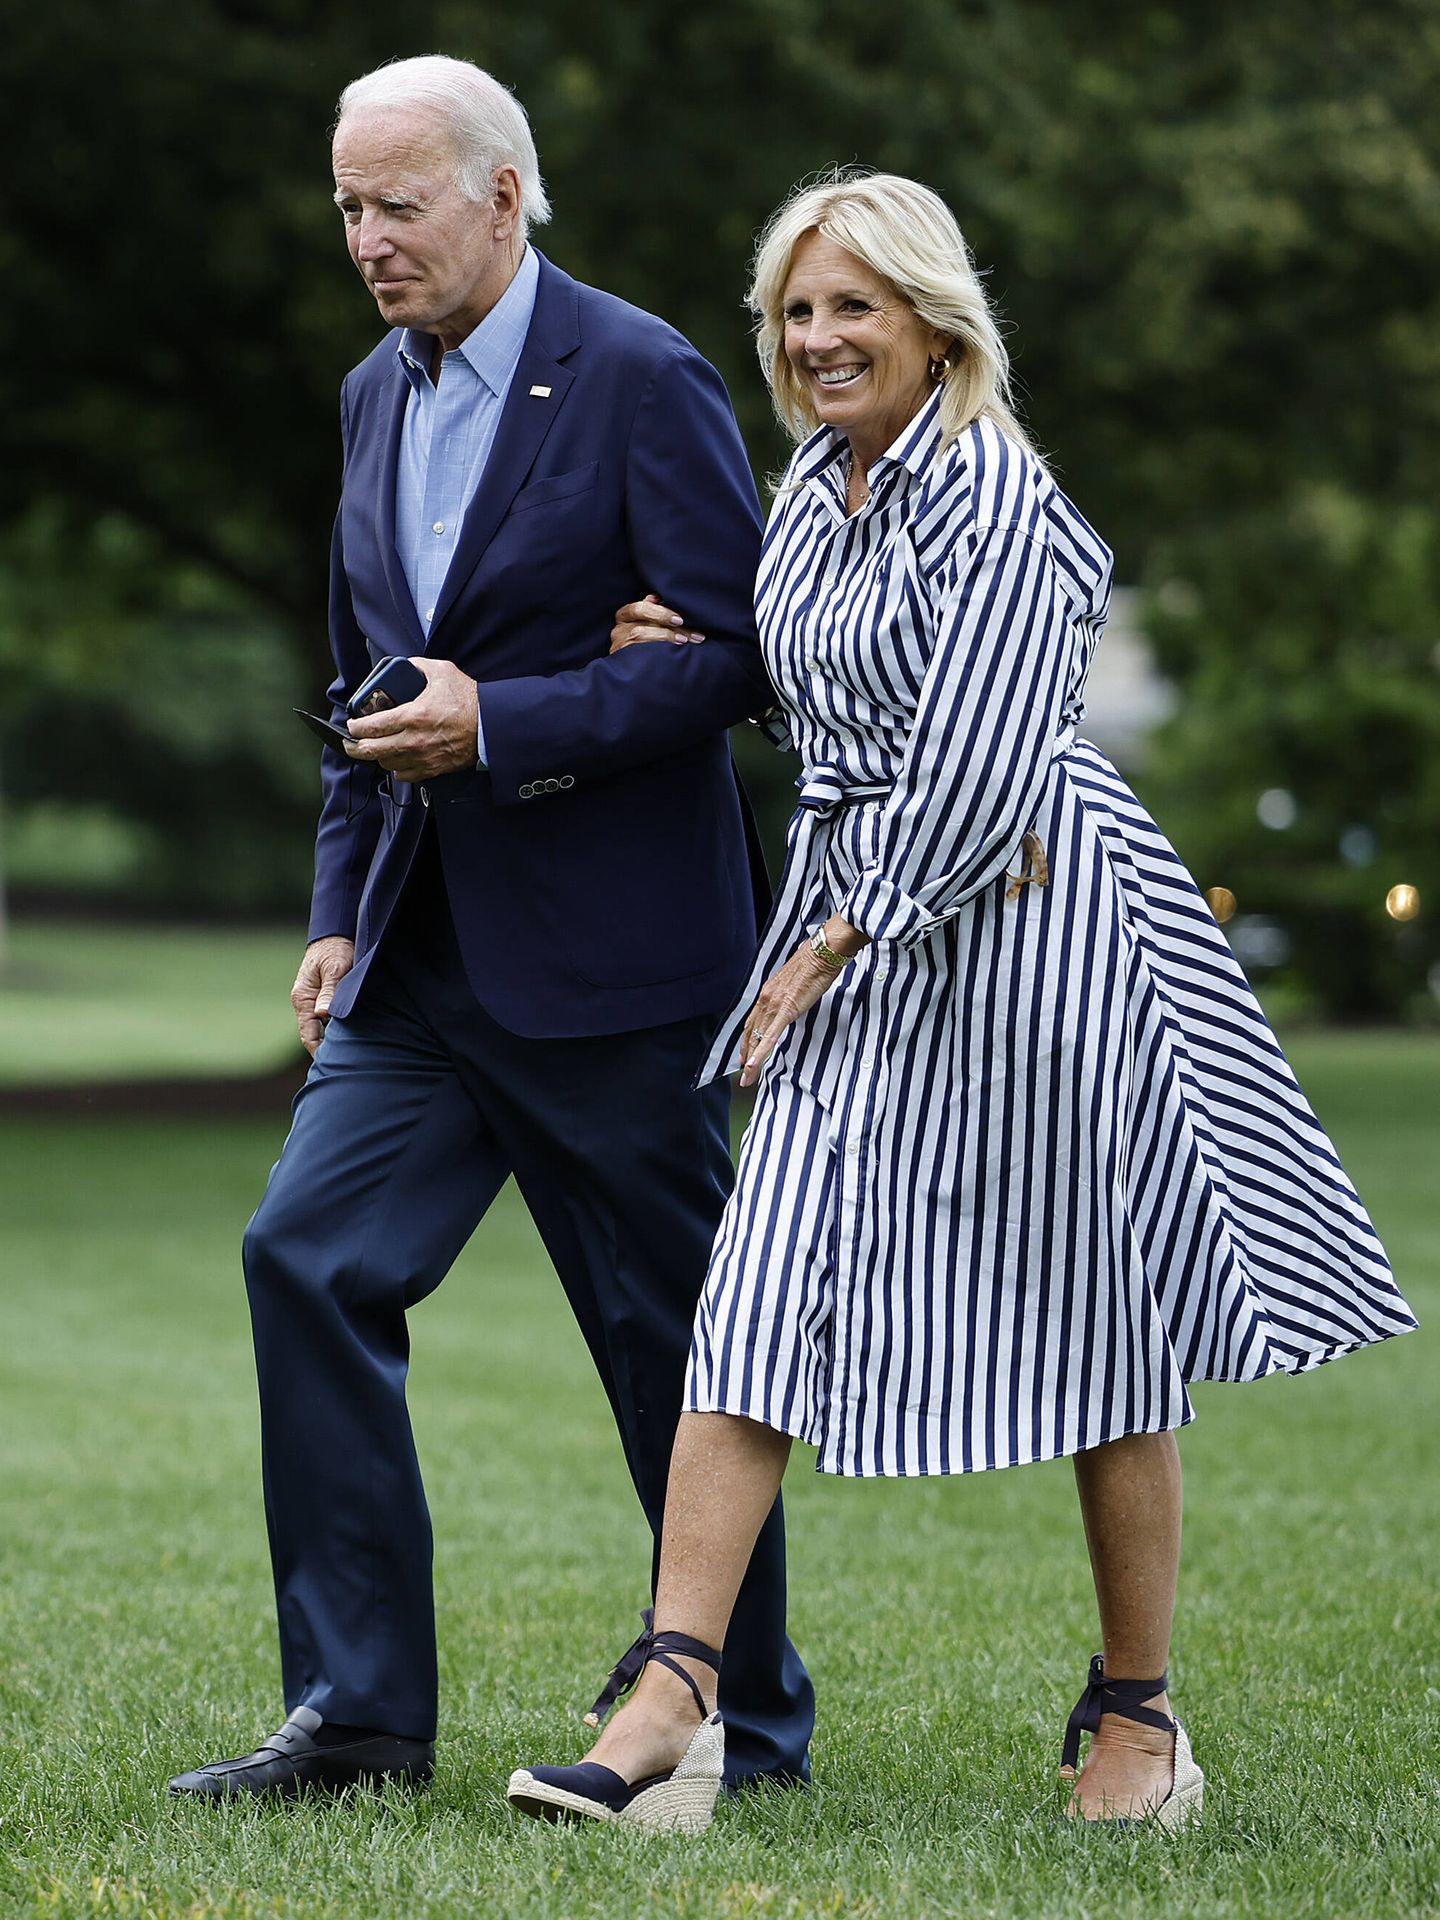 El look completo de Jill Biden con vestido camisero y alpargatas. (Getty/Chip Somodevilla)